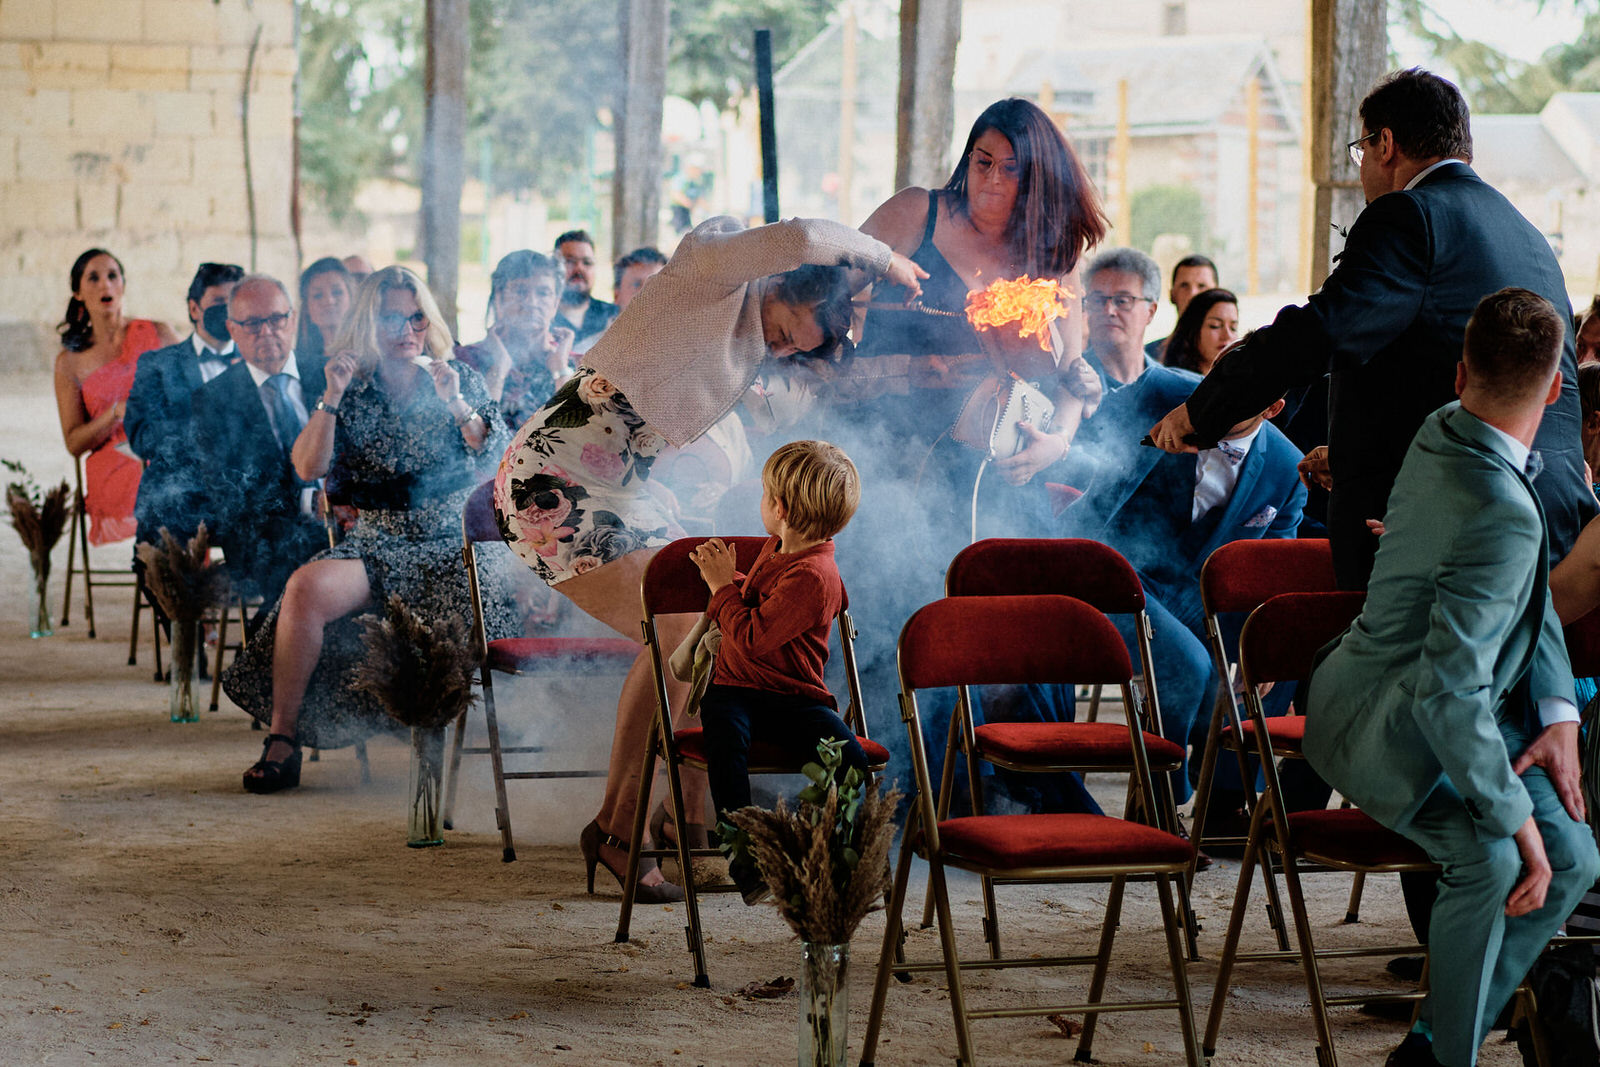 Une invitée de mariage lance son sac en flammes loin d'elle pendant une cérémonie